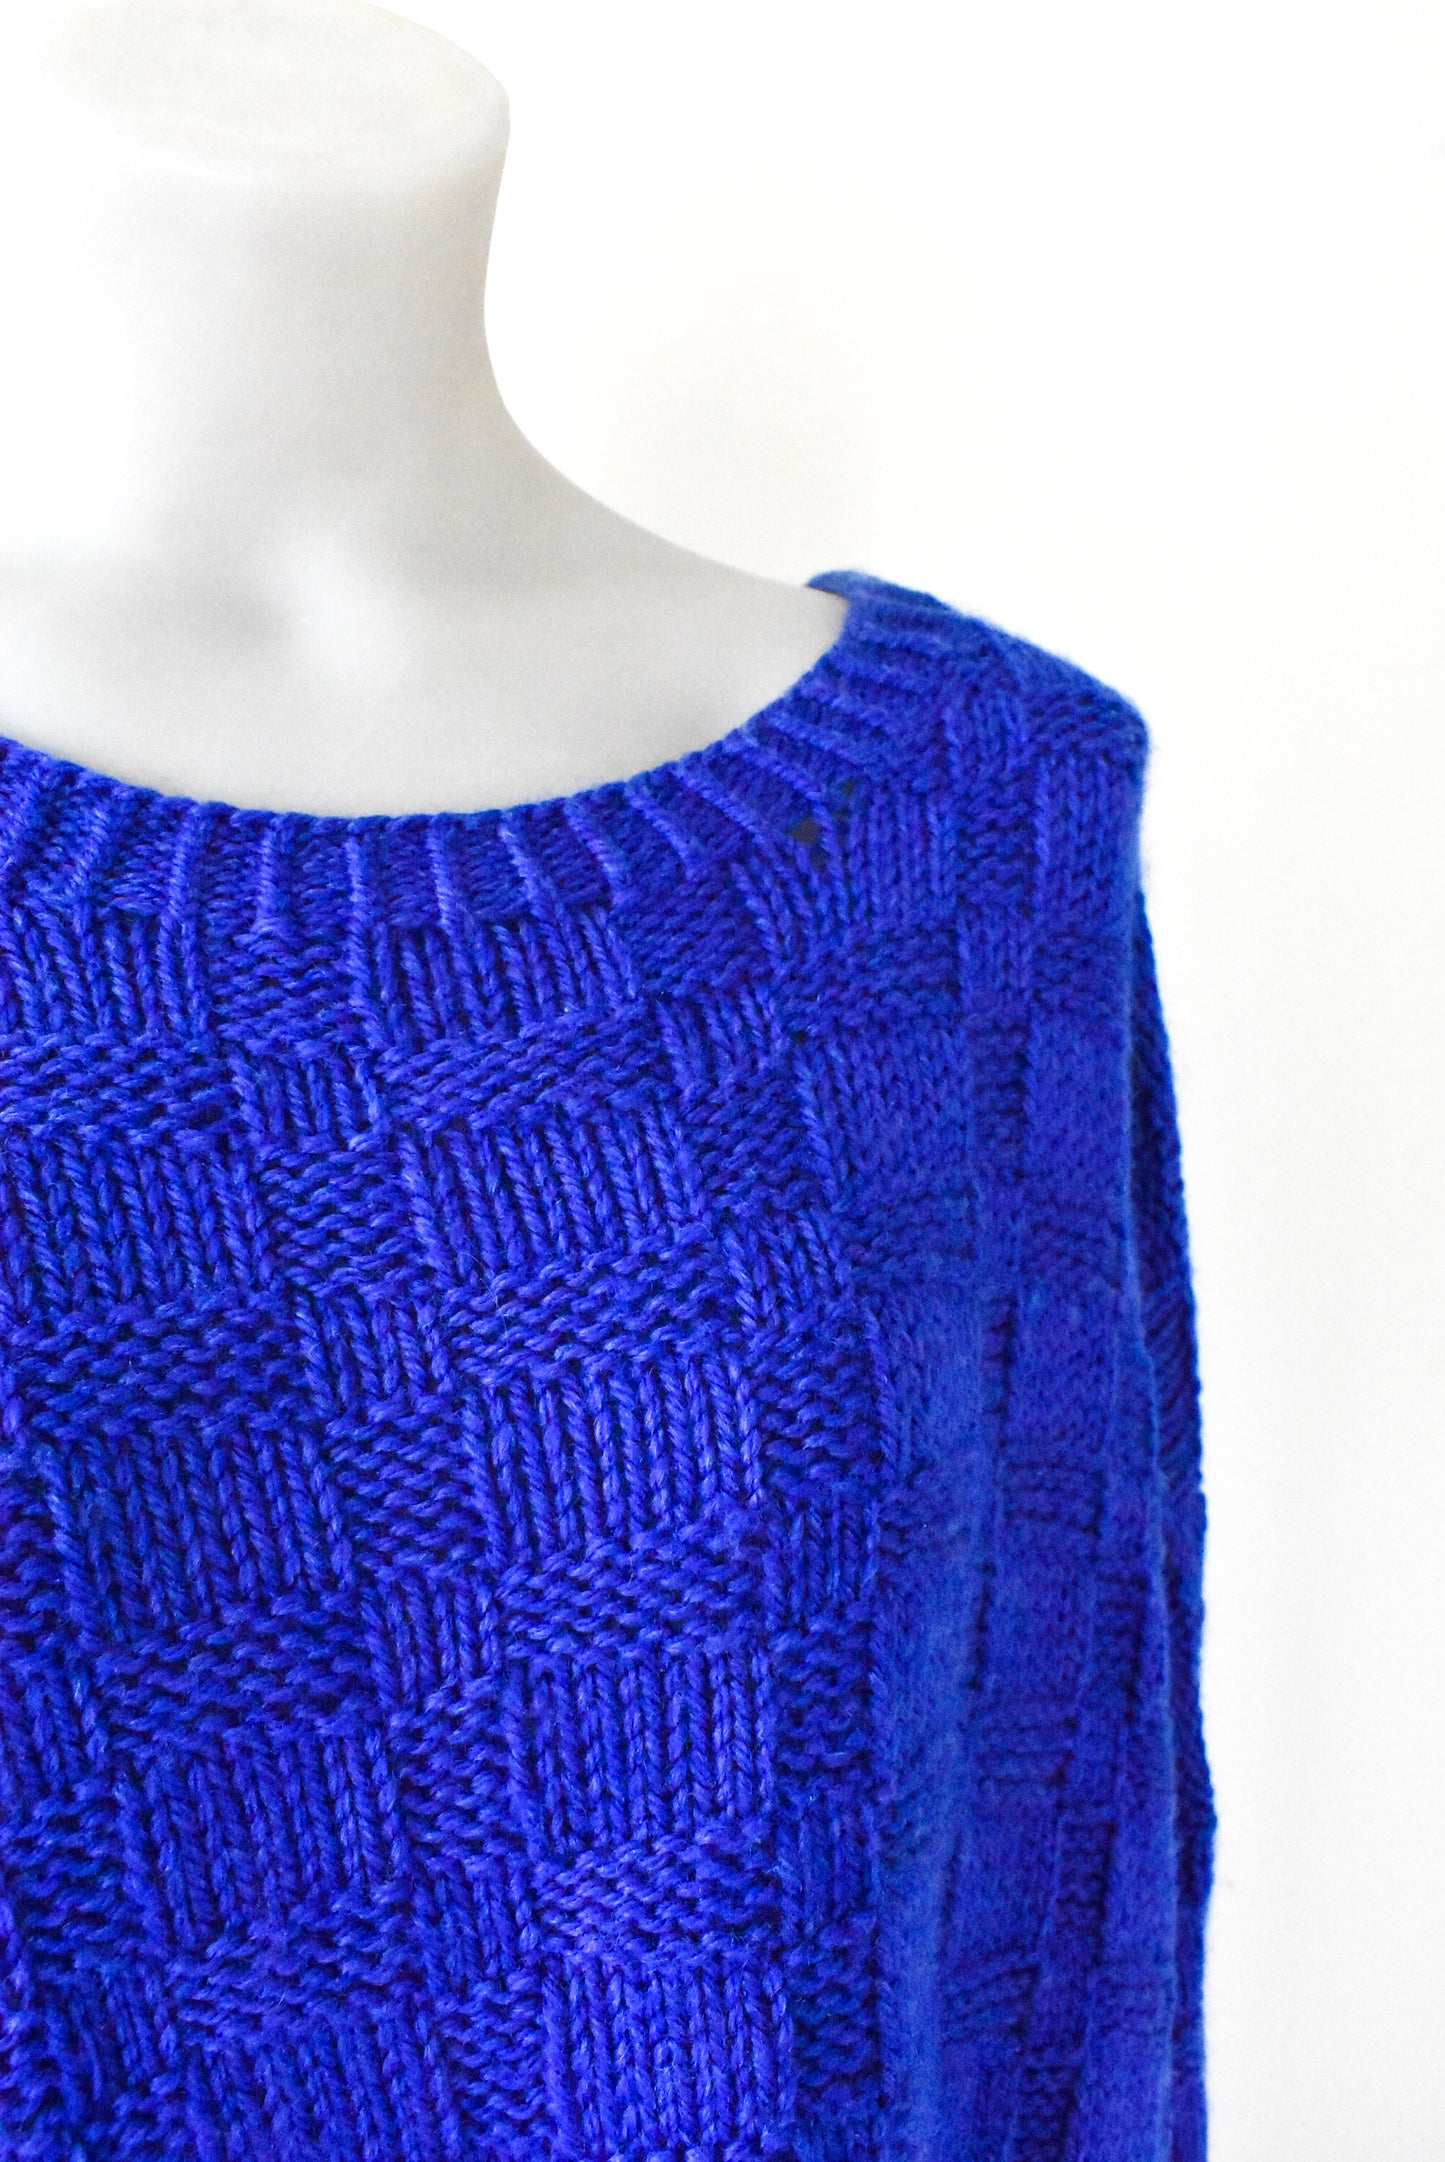 Big beautiful royal blue knit jersey, size XL